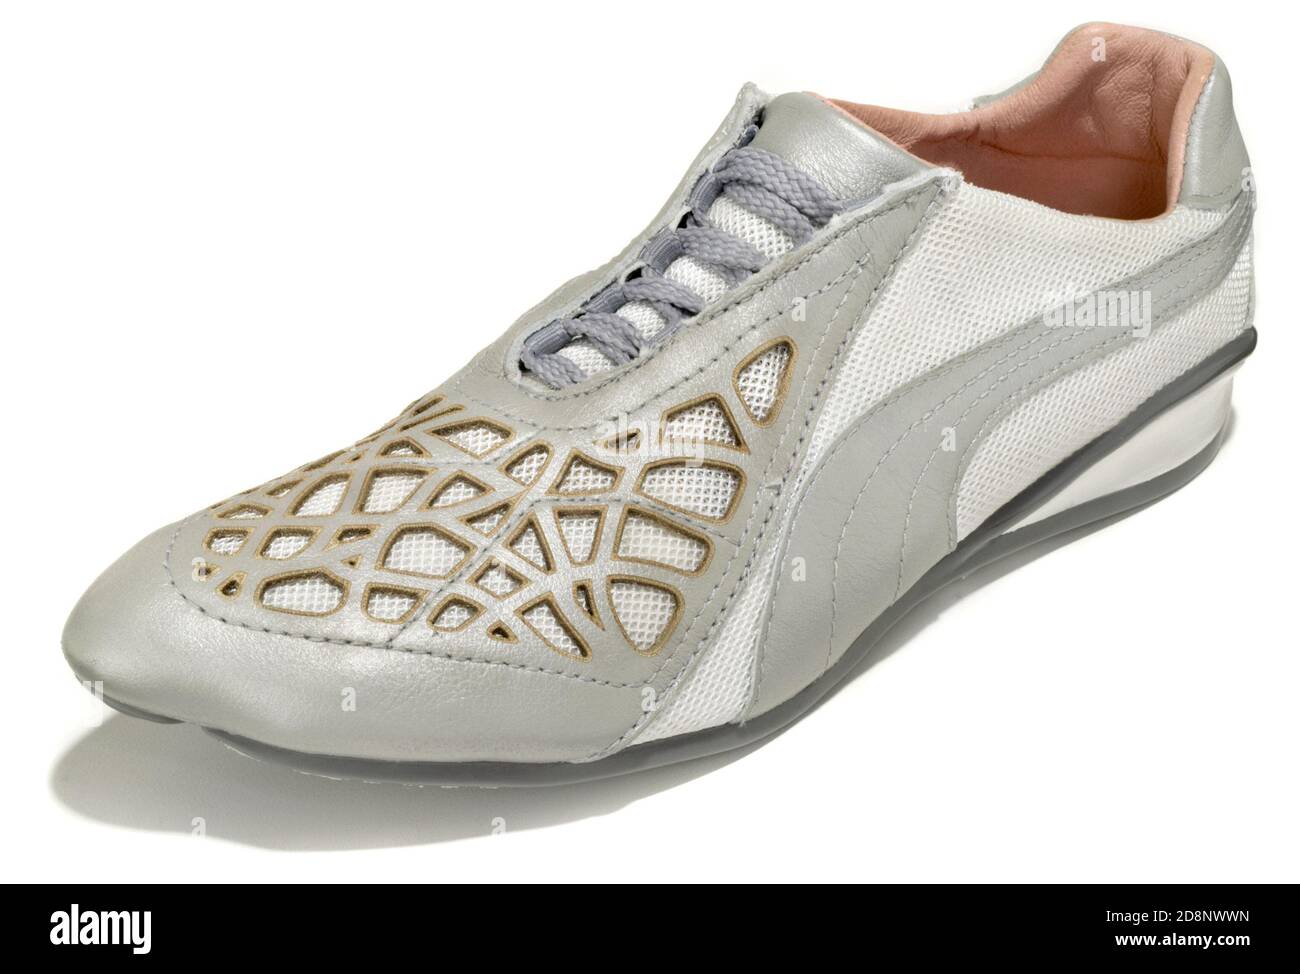 Une chaussure de course à pied blanche et argentée avec des détails dorés  Conçu par Puma en collaboration avec Alexander McQueen photographié sur un  arrière-plan blanc Photo Stock - Alamy